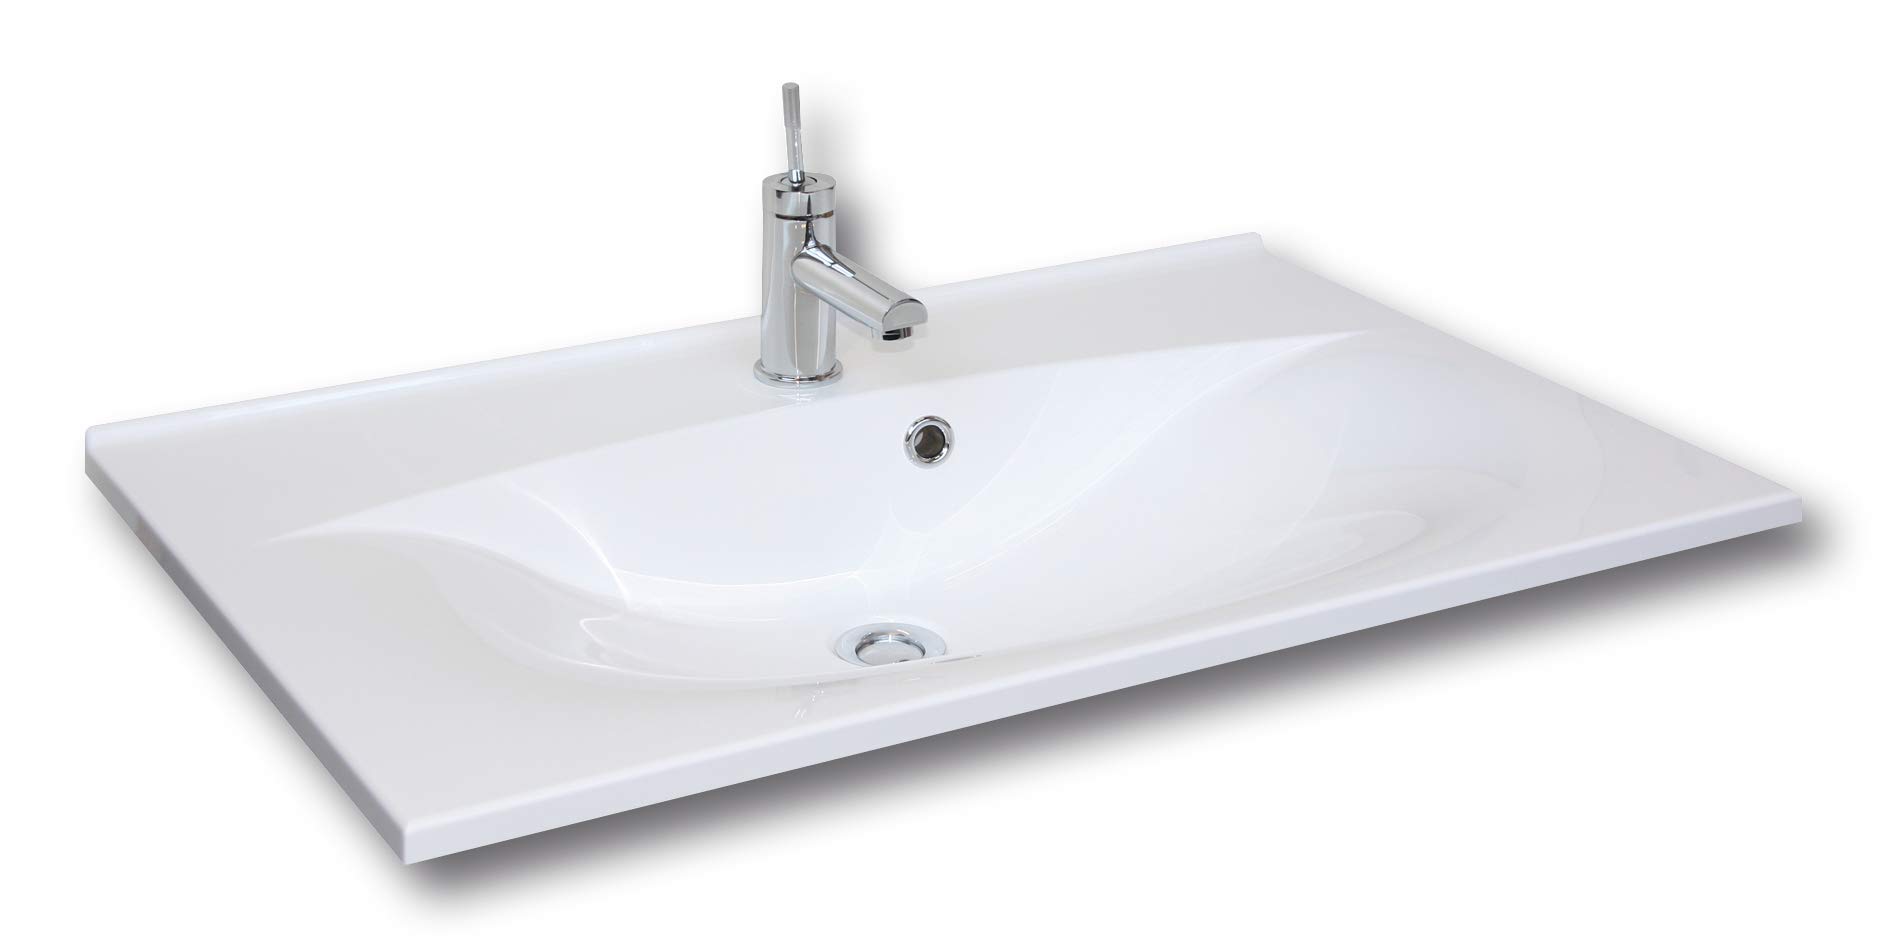 FACKELMANN Waschbecken CAPRI / Waschtisch aus Gussmarmor / Maße (B x H x T): ca. 80 x 14,5 x 50 cm / Einbauwaschbecken / hochwertiges Becken fürs Badezimmer und WC / Farbe: Weiß / Breite: 80 cm